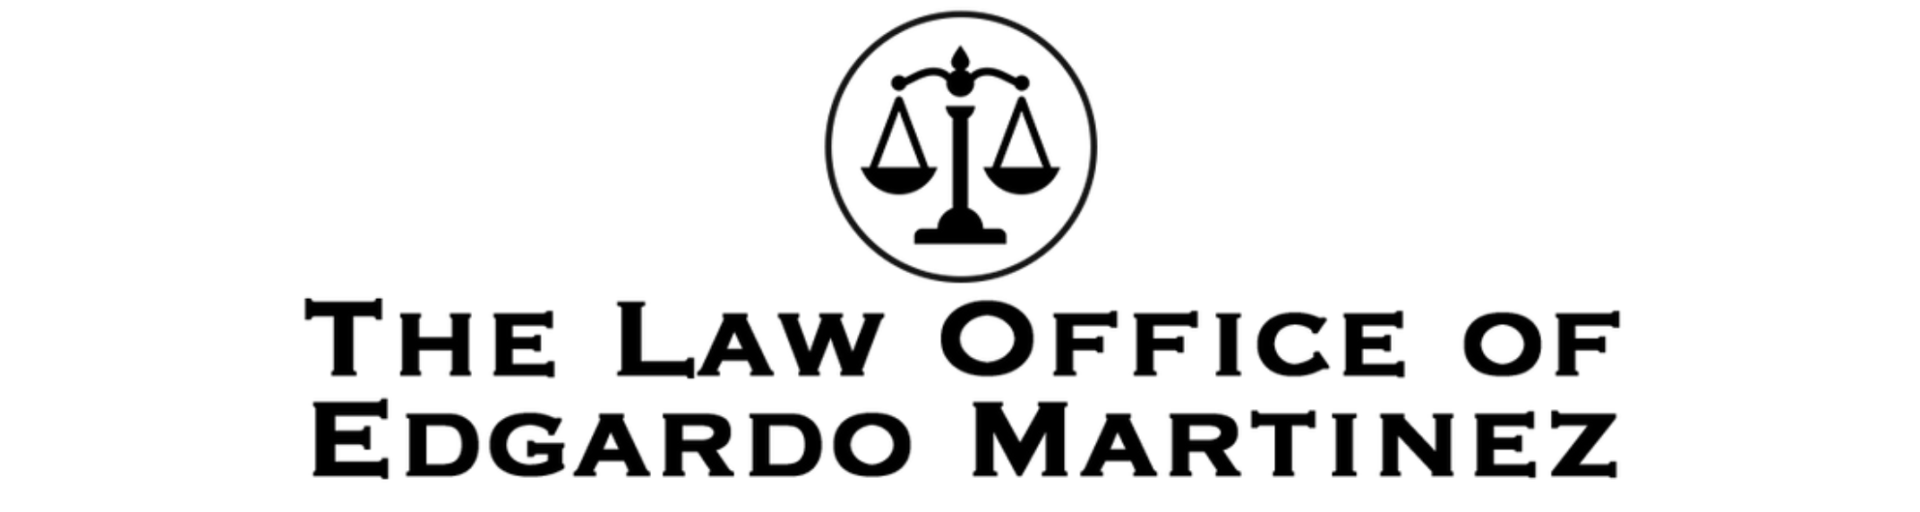 Law Office of Edgardo Martinez